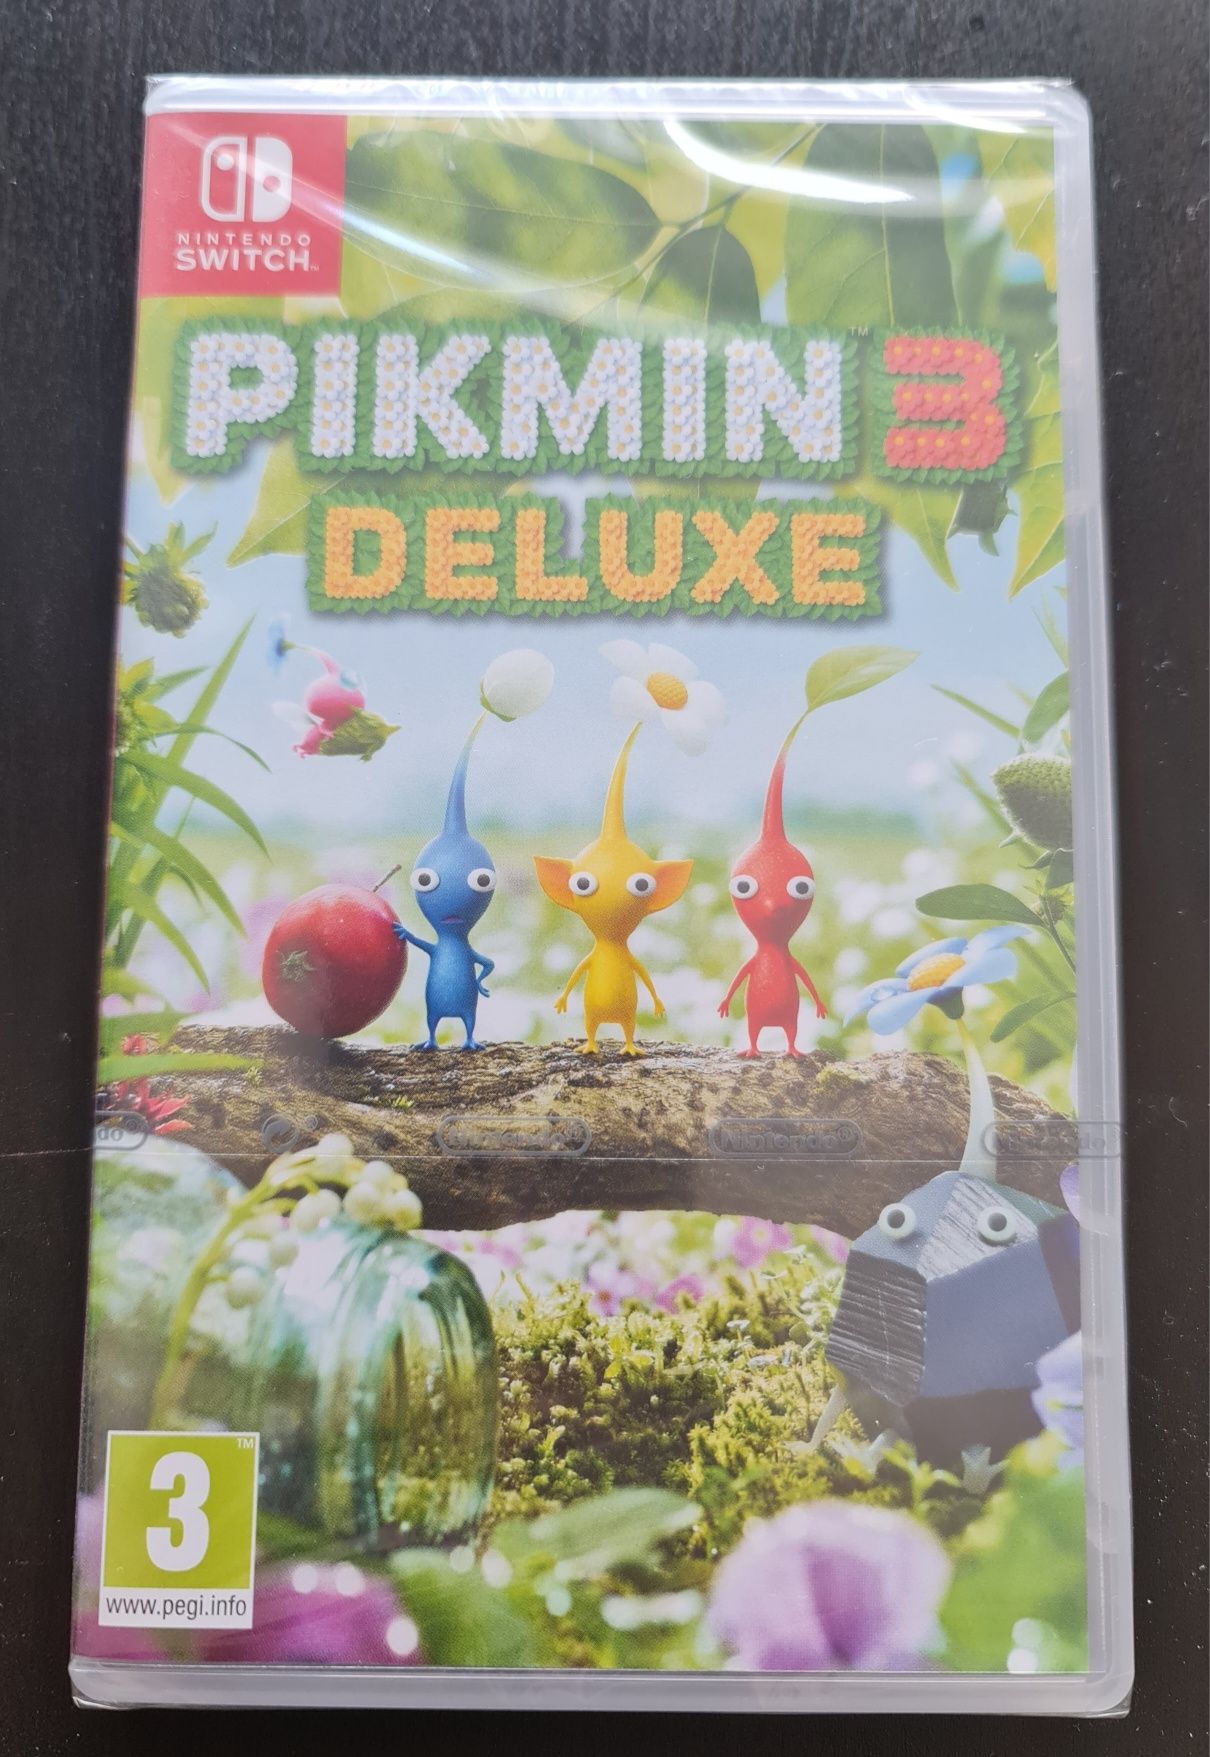 "Pikmin 3" Nintendo Switch